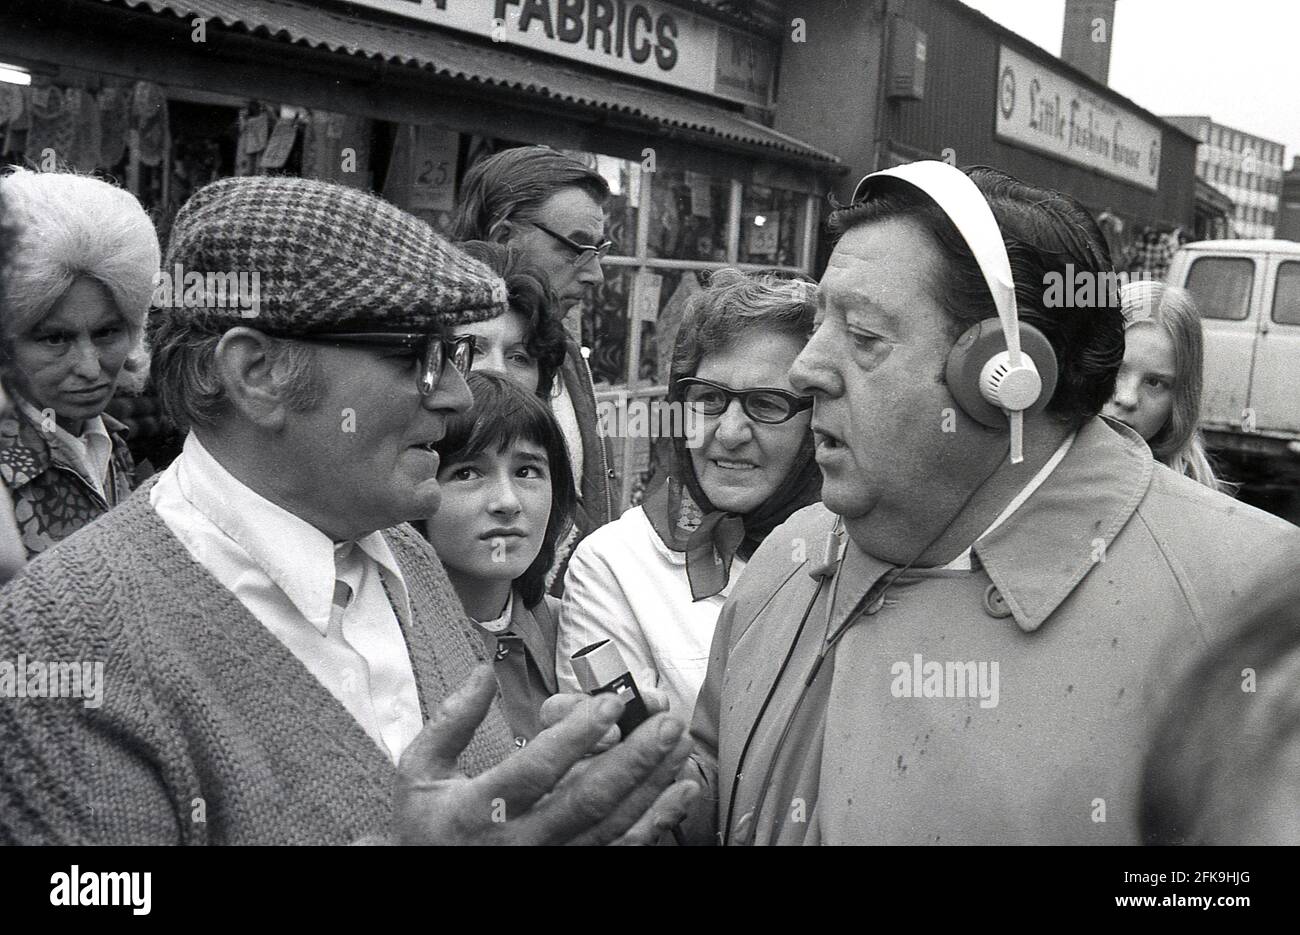 Années 1970, homme populaire du peuple, présentateur de radio et  journaliste, Monty Modlyn parlant à un homme local portant une casquette  plate entouré par des gens dans une zone de marché du